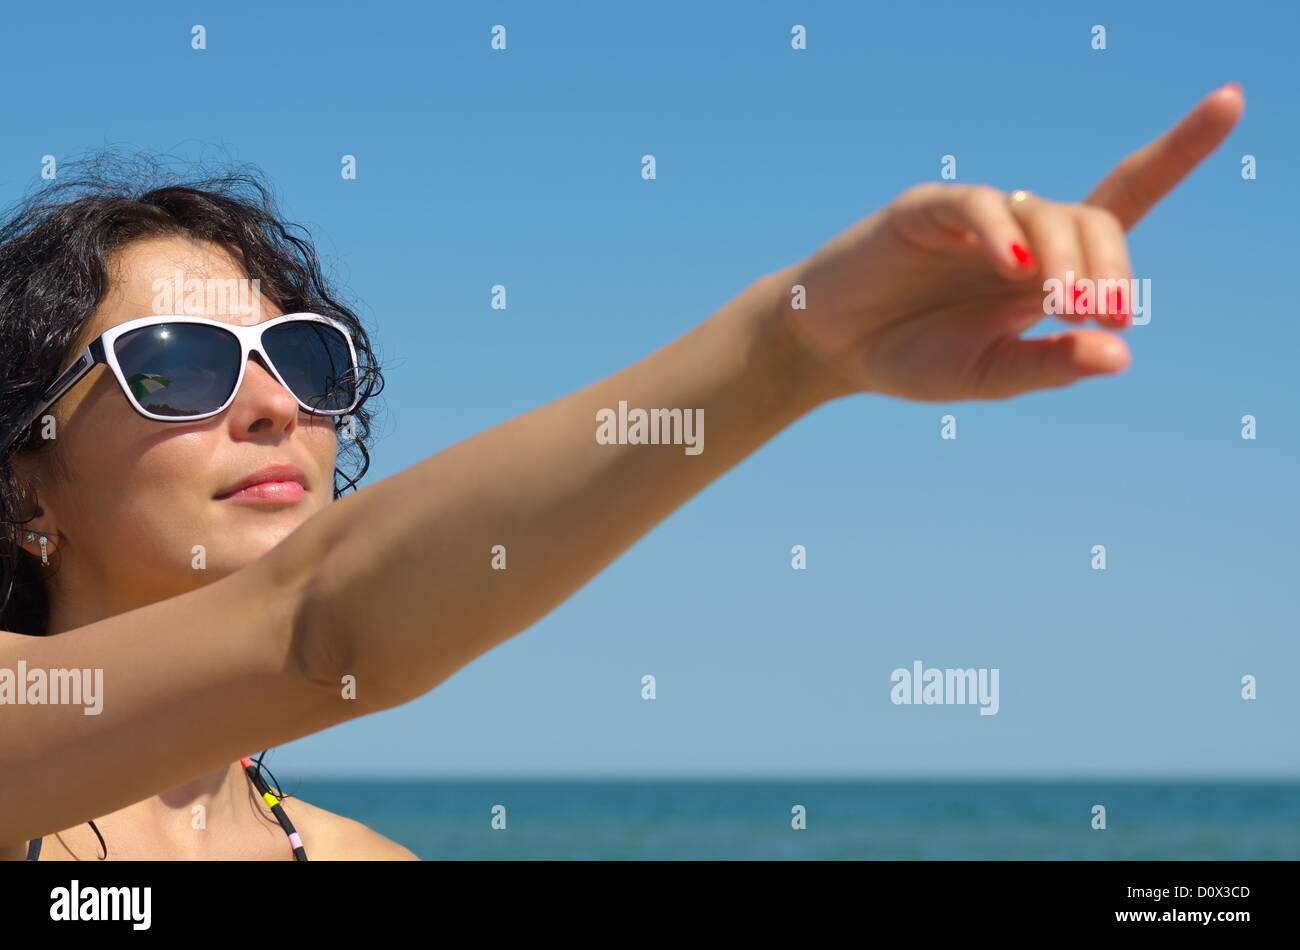 Bella mujer en gafas de sol con un brazo extendido apuntando al cielo azul por encima de su cabeza Foto de stock